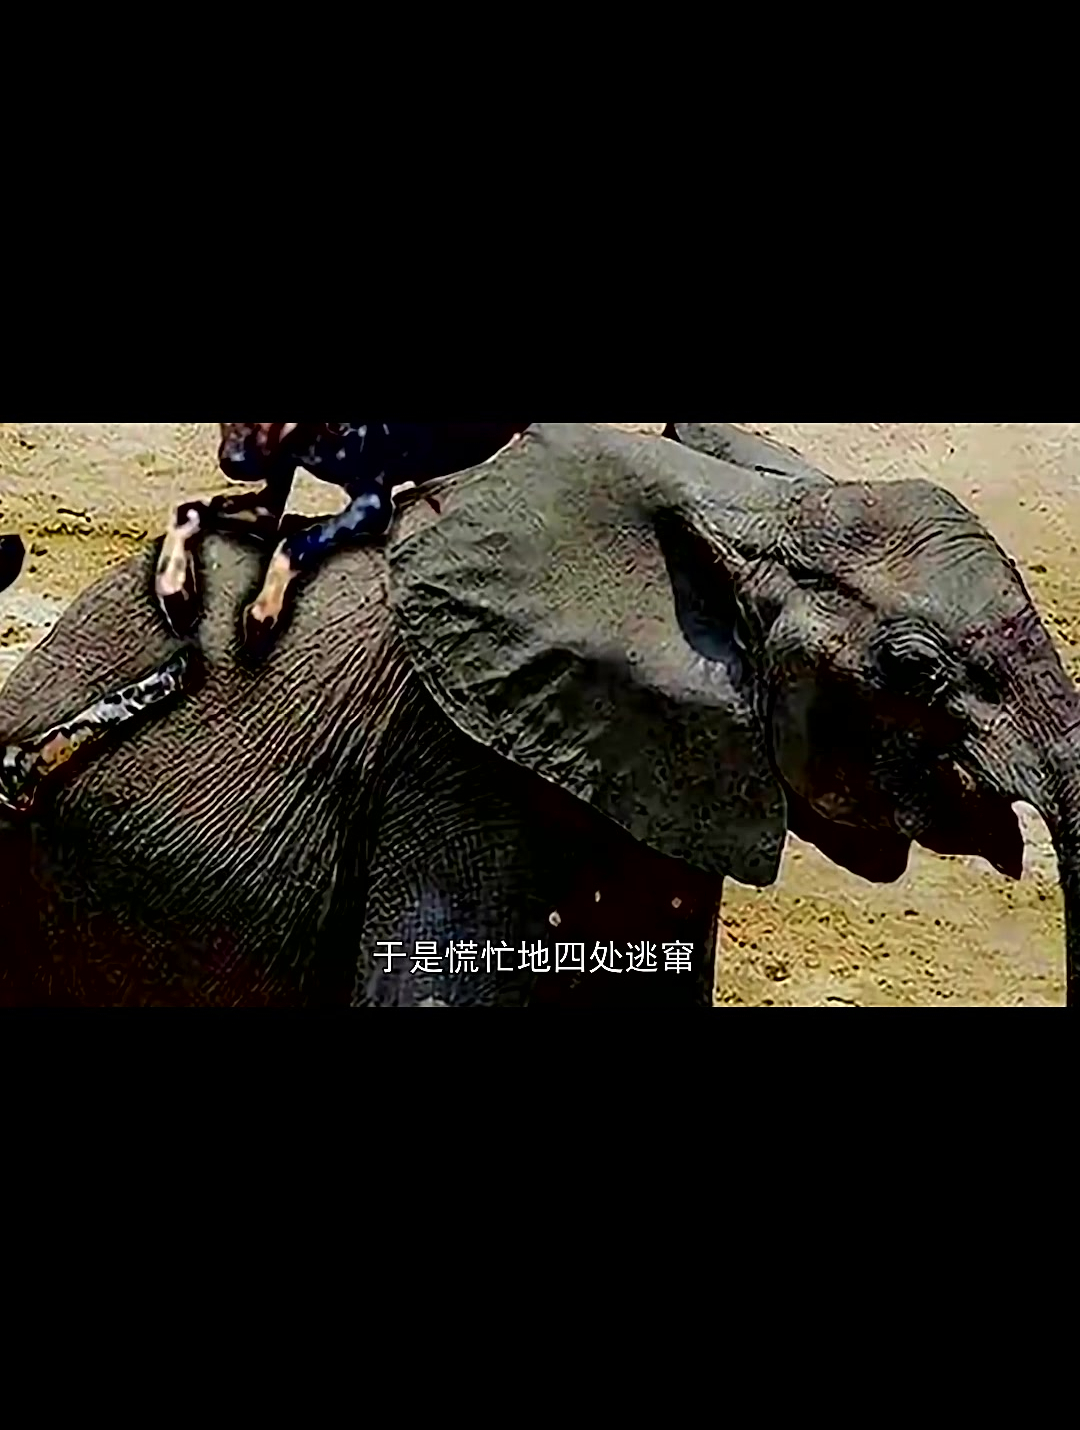 10条野狗围攻7吨的大象,大象彻底被激怒,野狗下一秒就后悔了